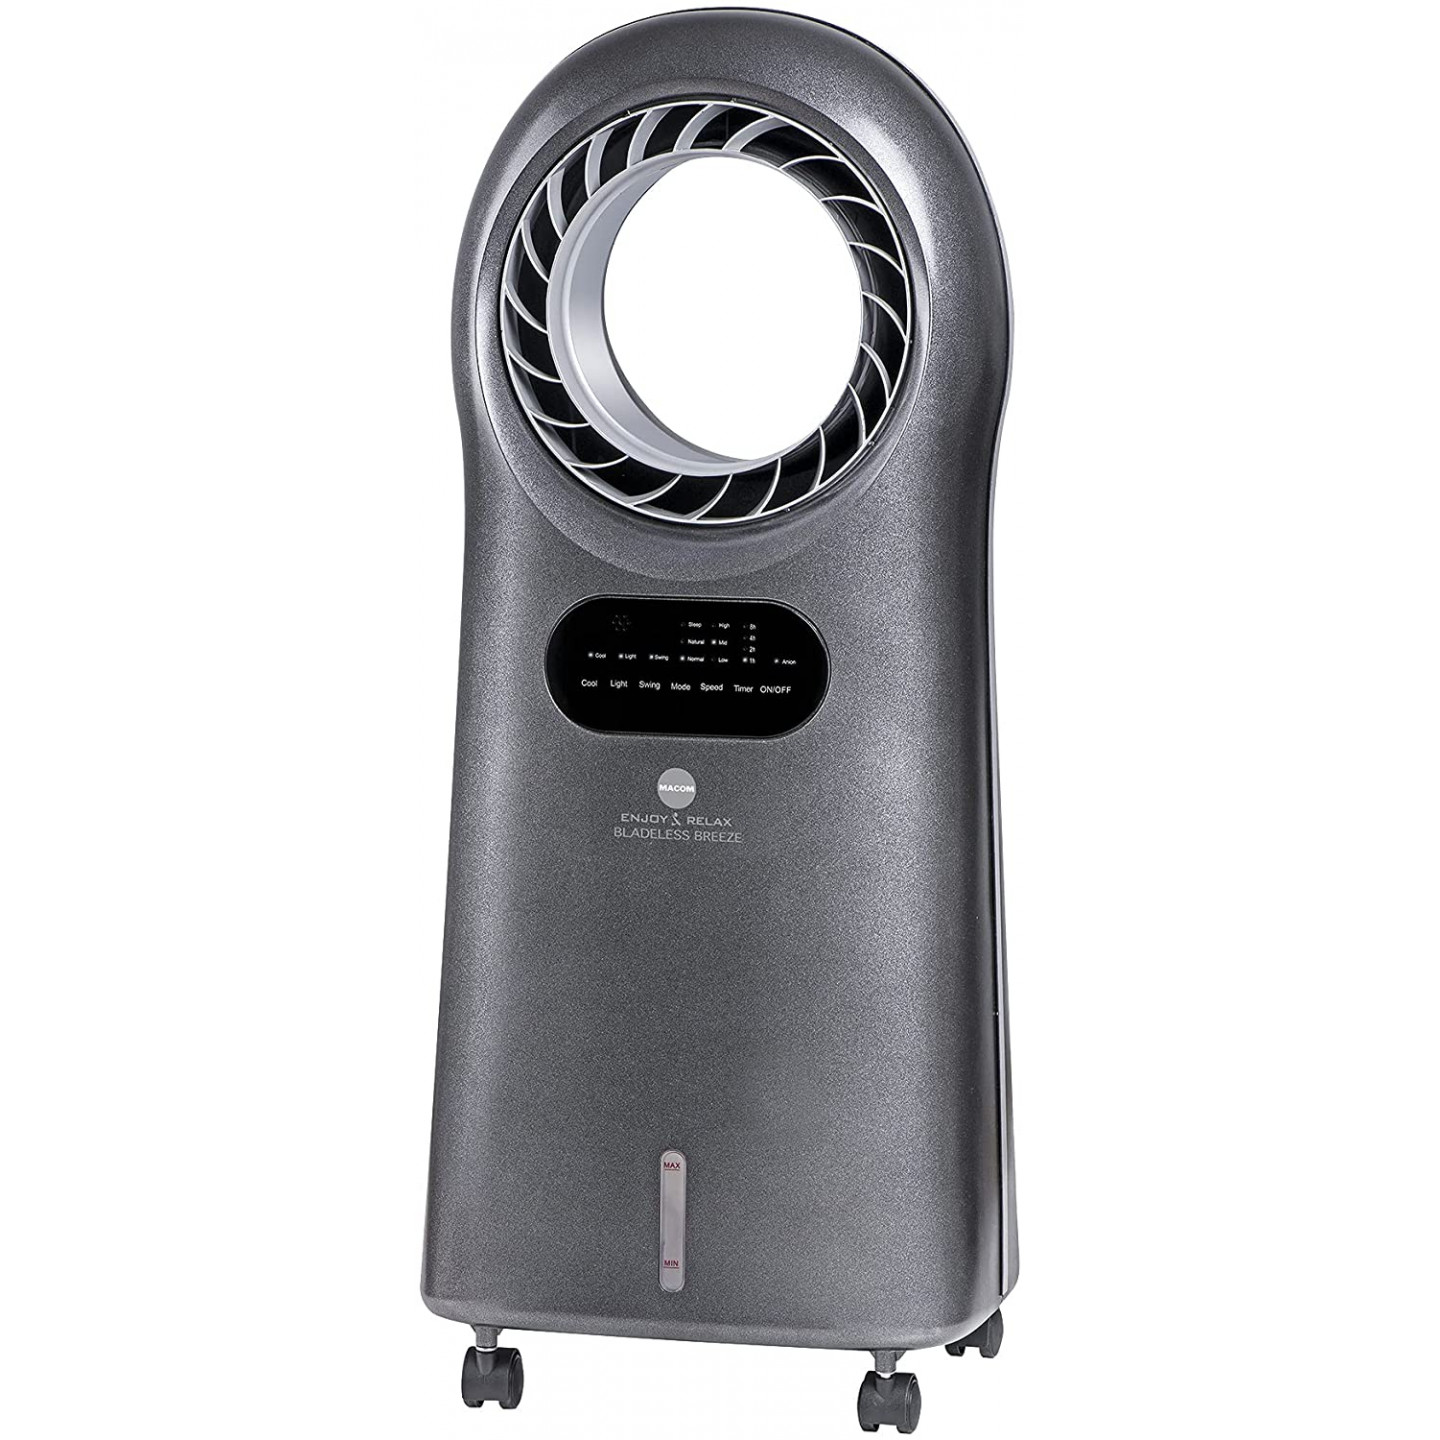 Raffrescatore evaporatore senza pale Macom grigio 110 W con telecomando